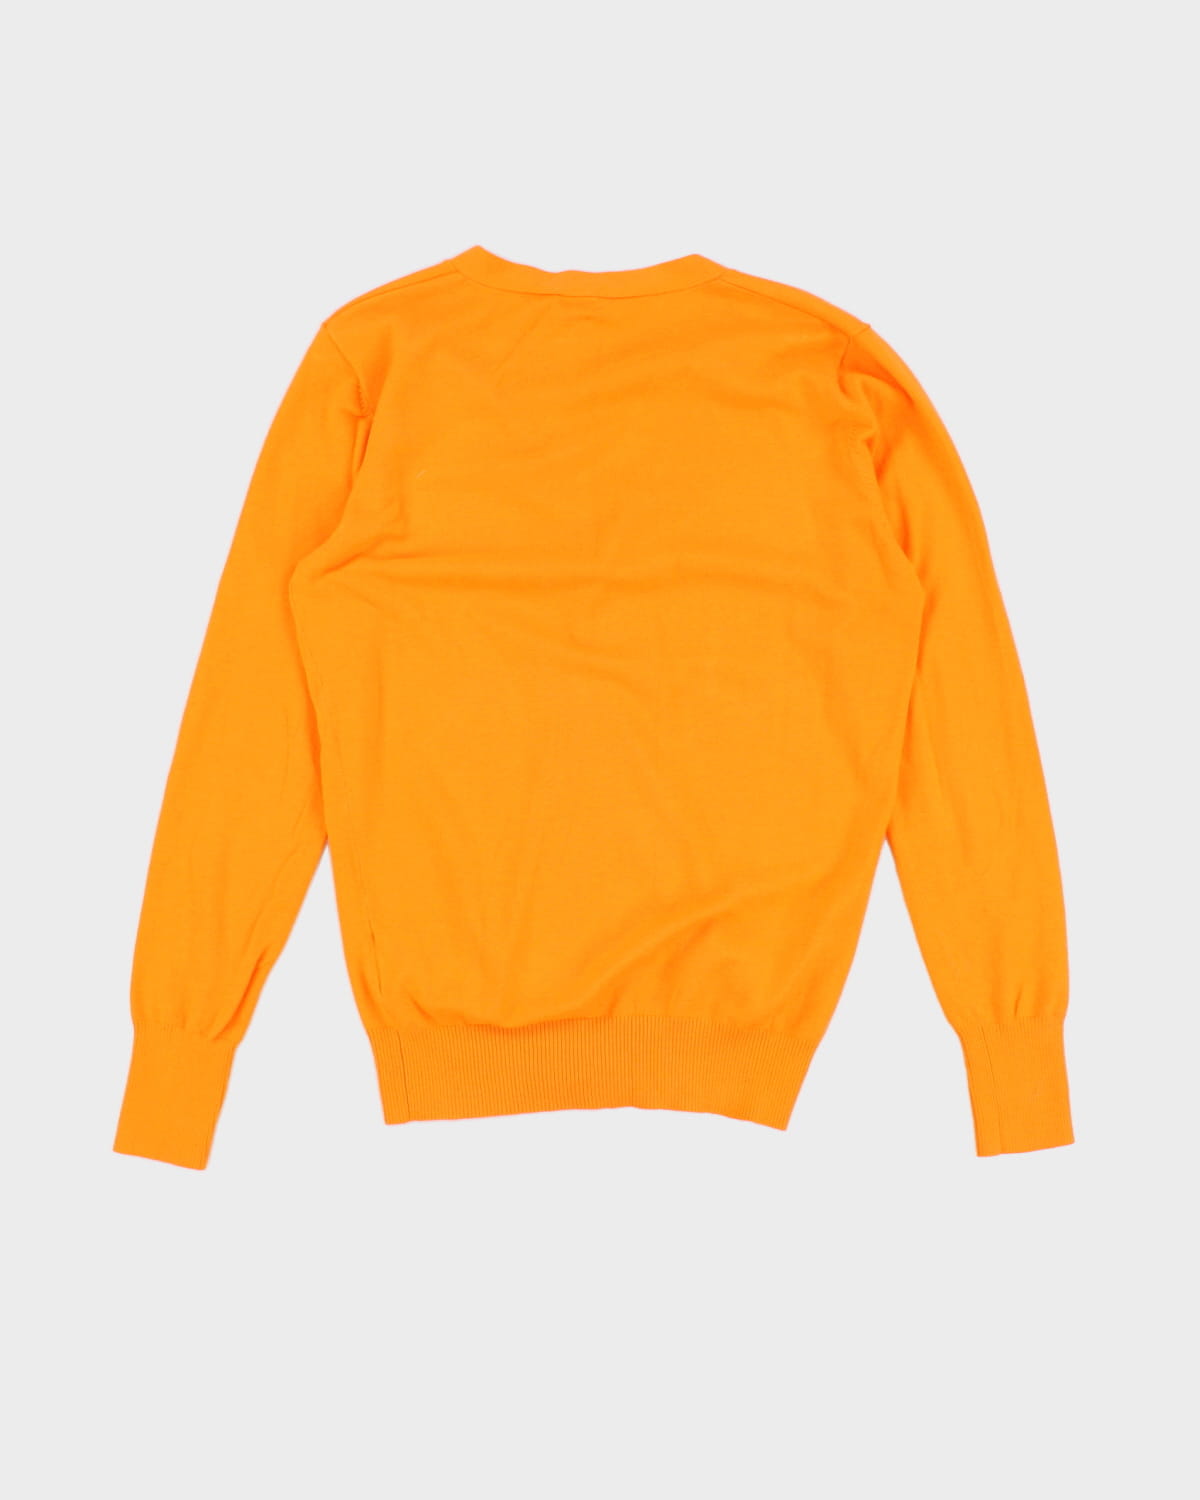 00s Diesel Bright Orange Cardigan - M